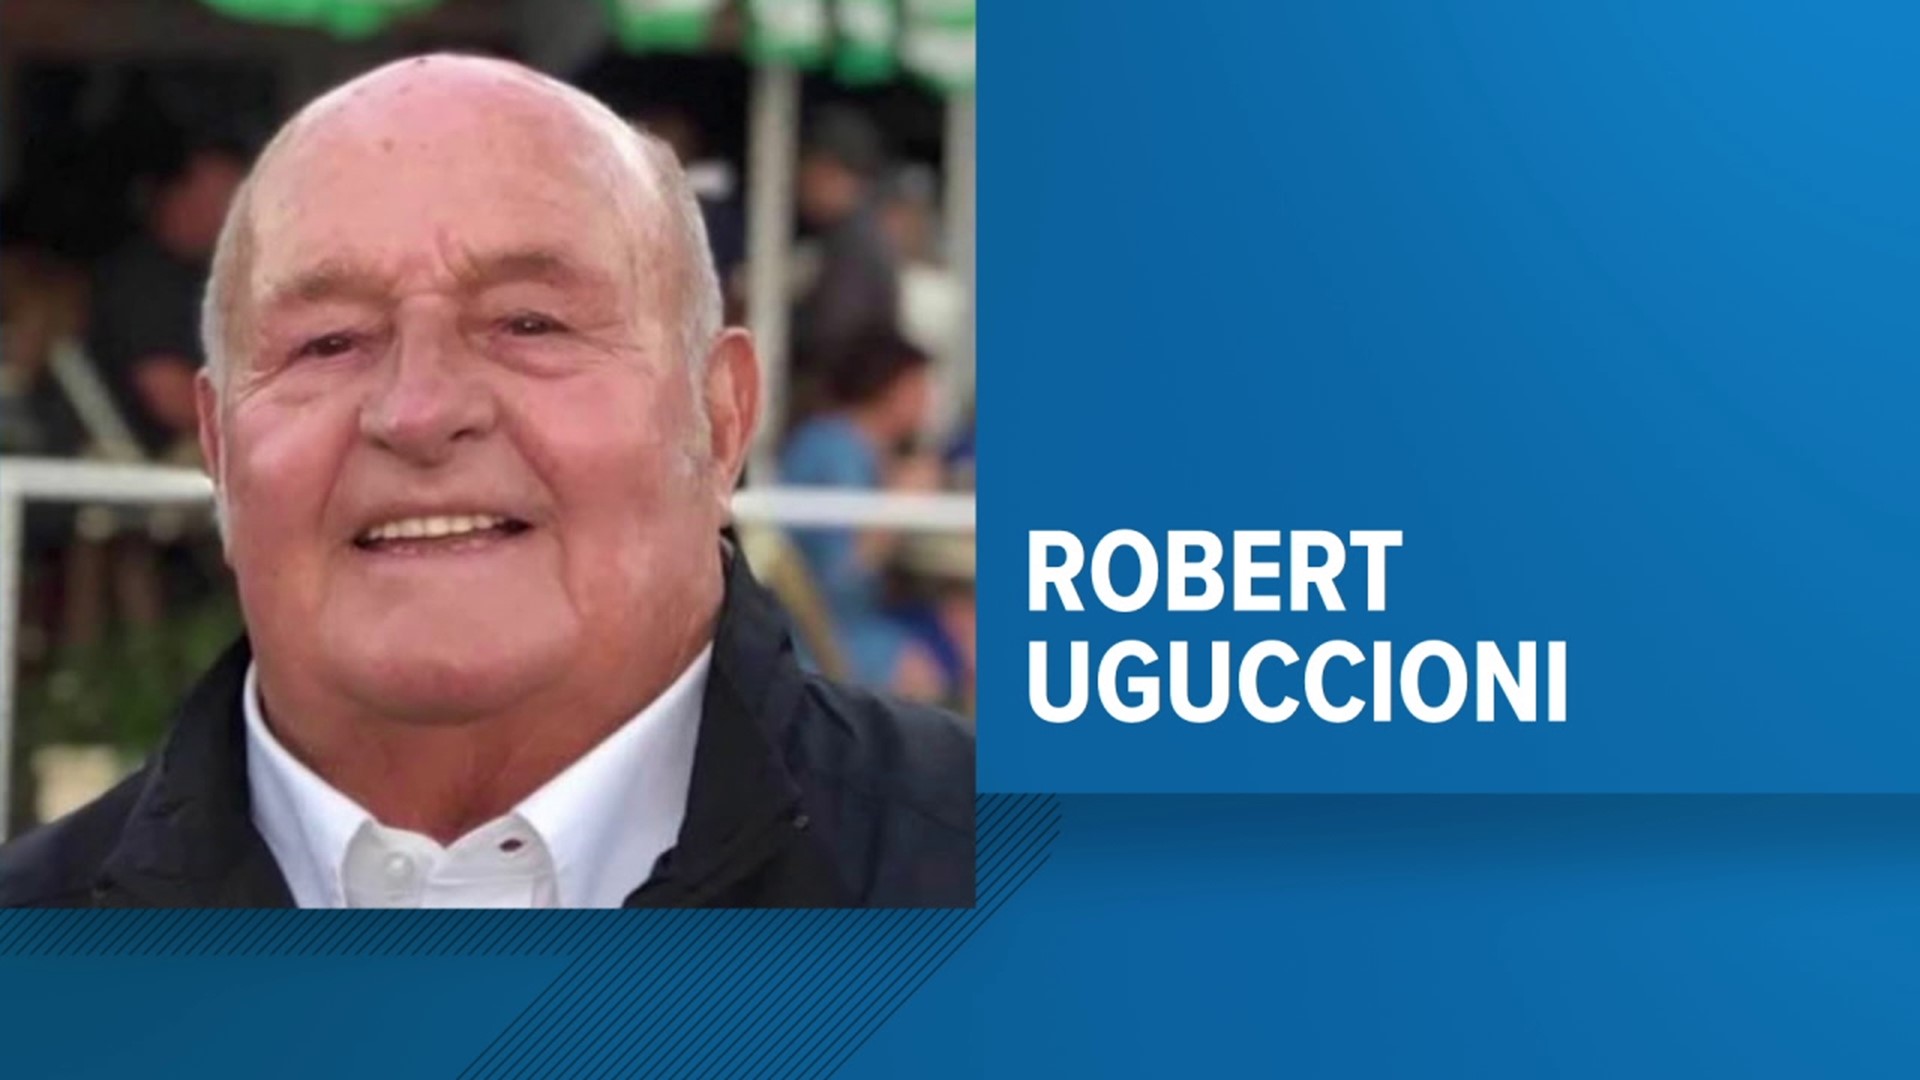 Bob Uguccioni died Saturday at the age of 87.